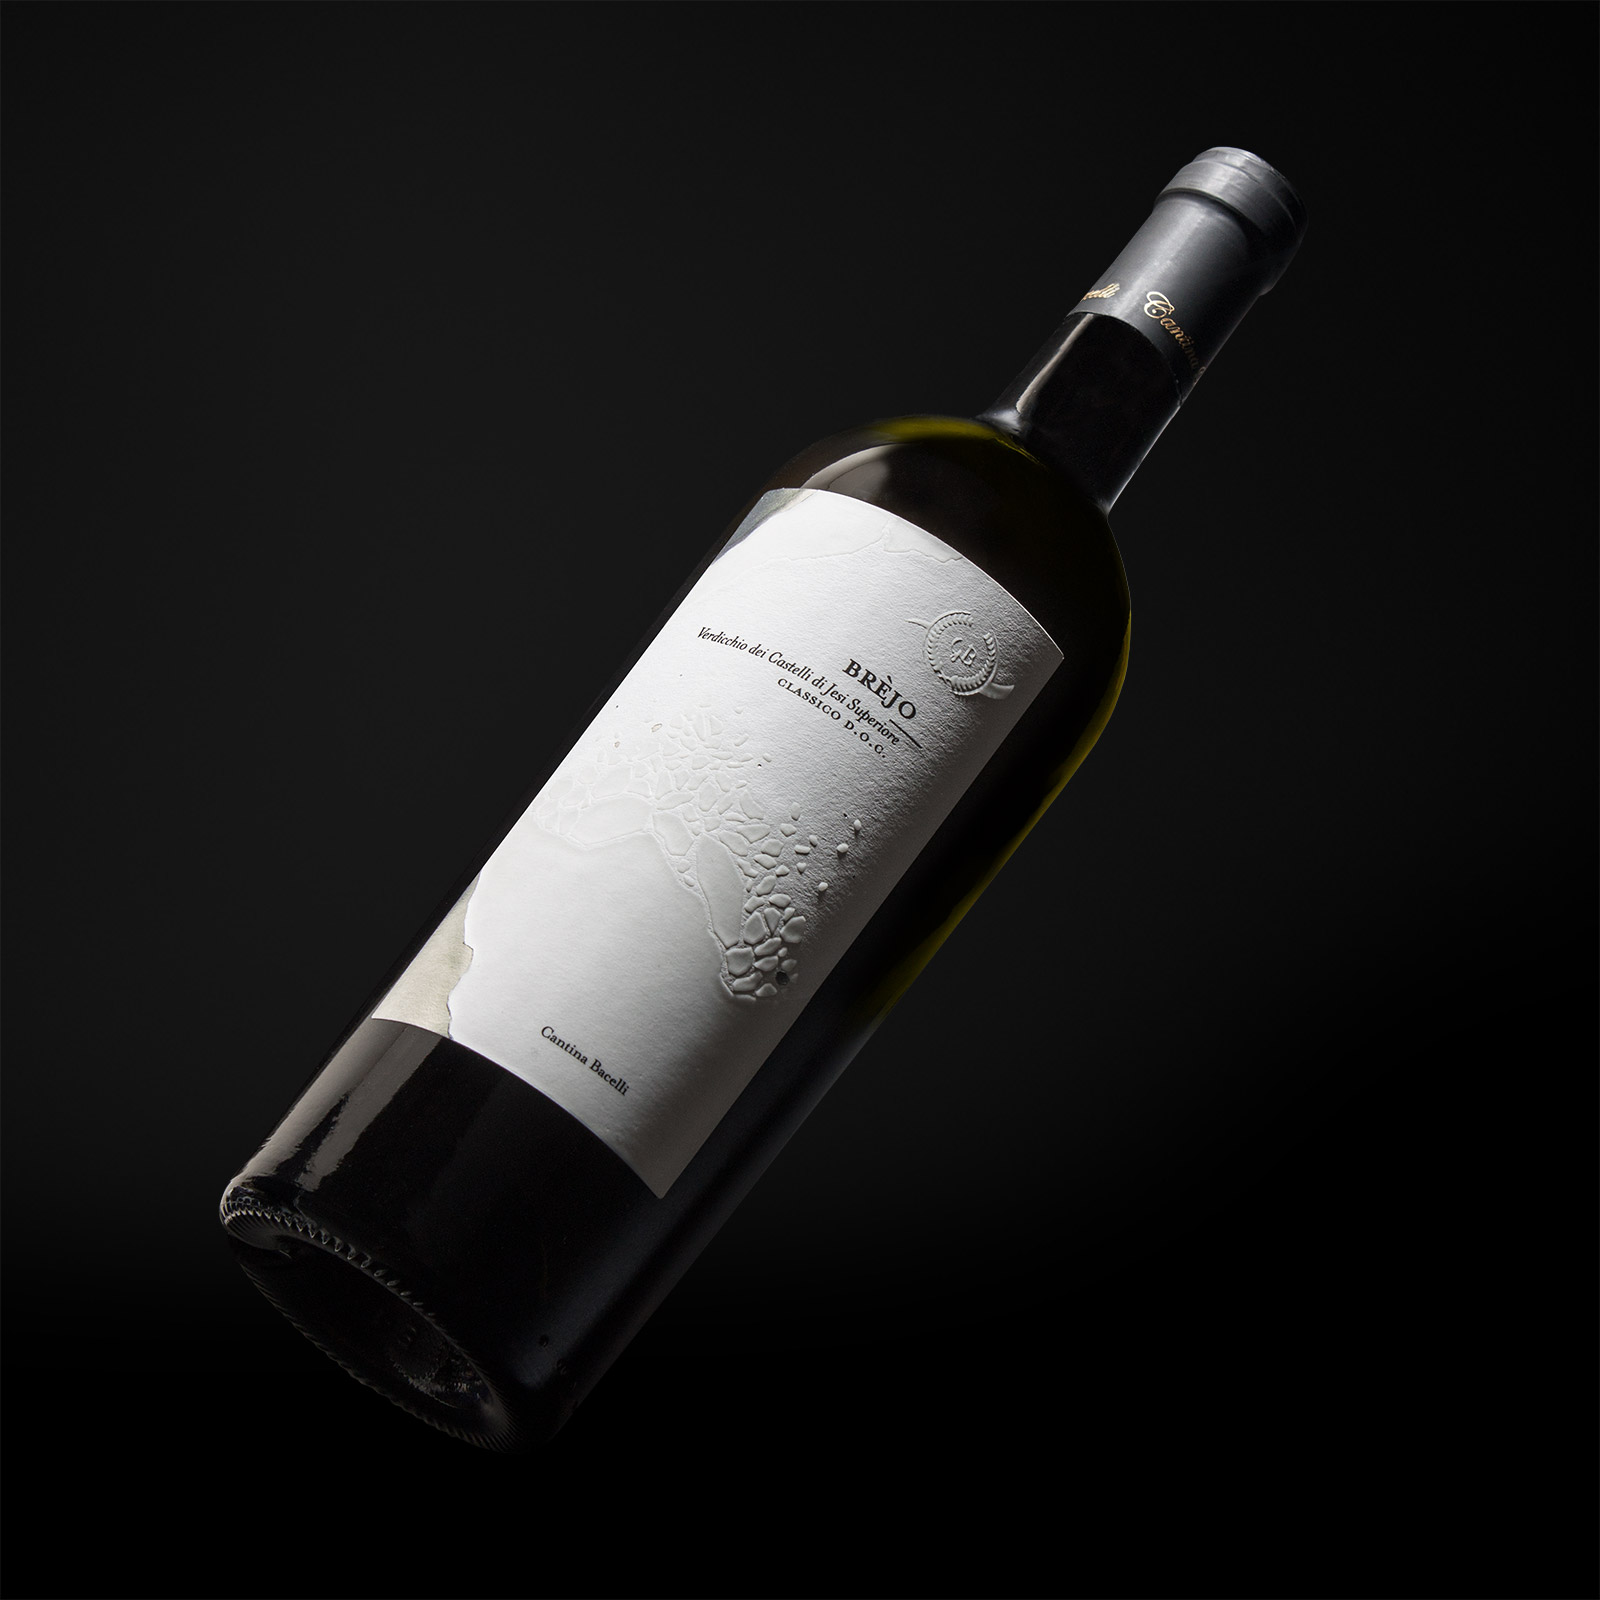 Brejo and Monte Circe Wine Label Design by Numeroquattro